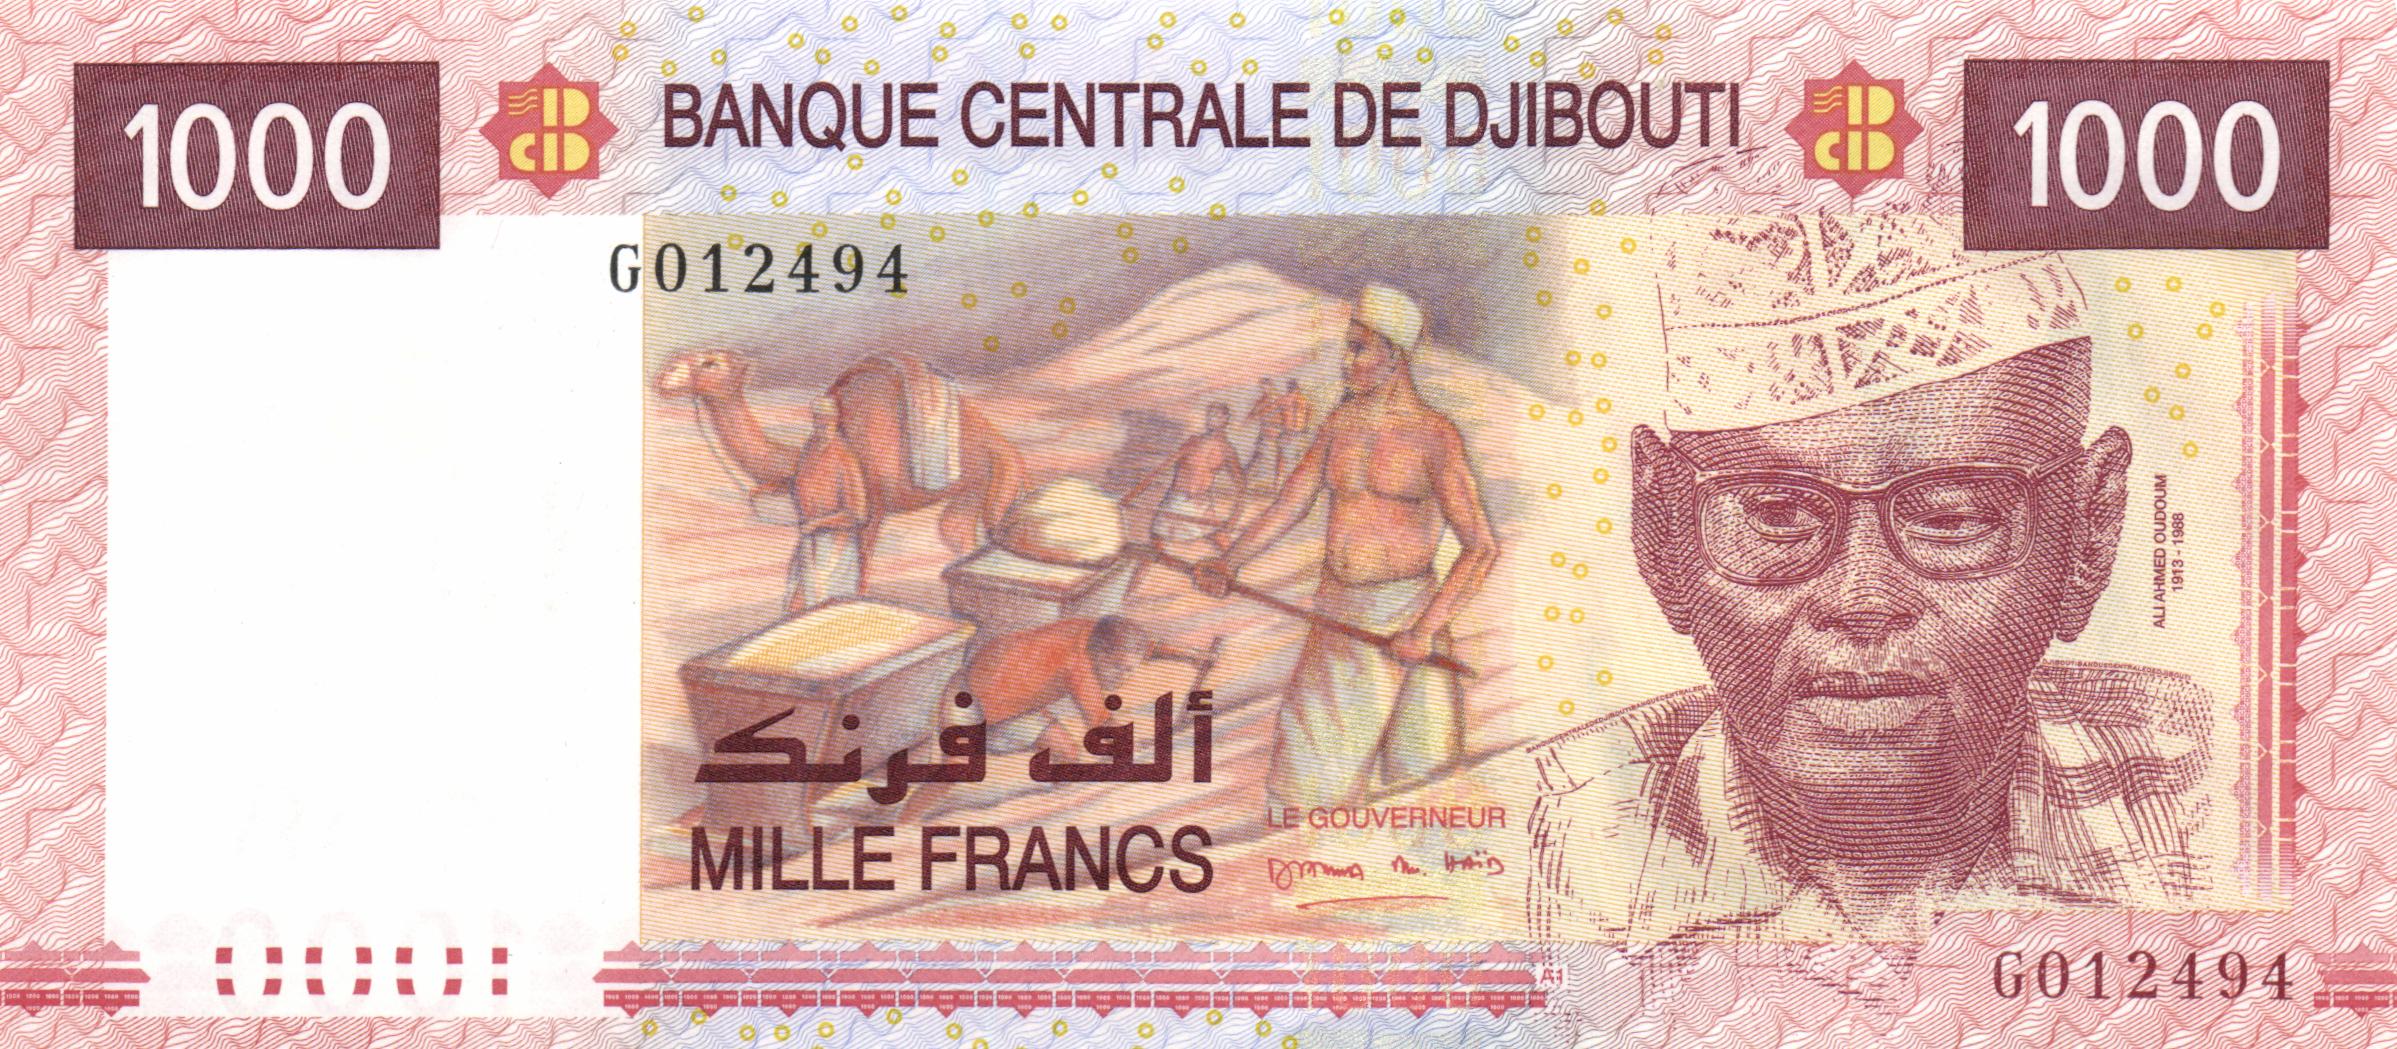 Djibouti 1000 Francs p-42 2005 UNC Banknote 